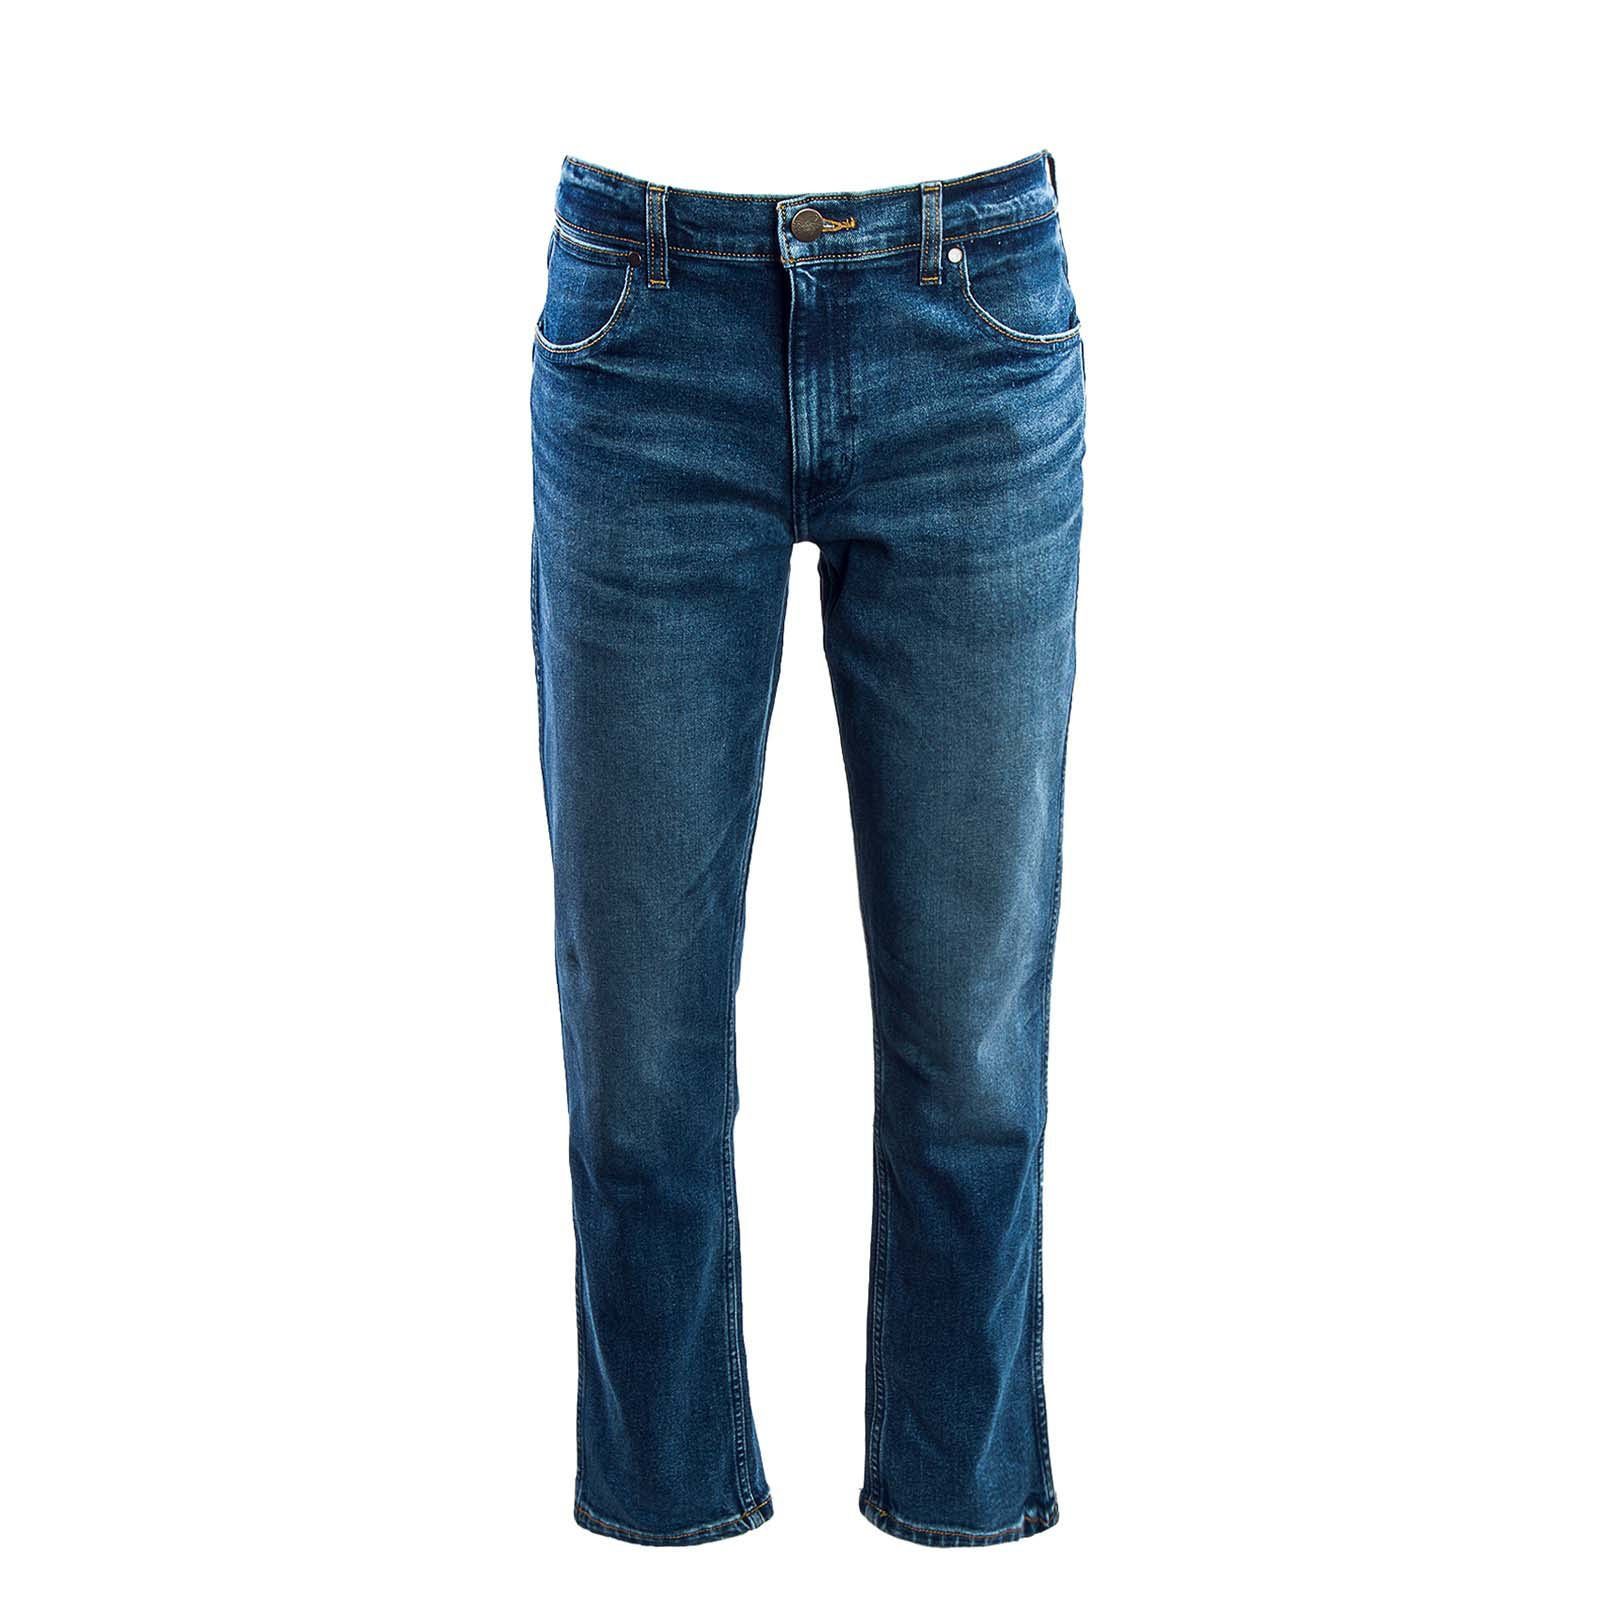 Neptun 803 Greensboro Straight-Jeans Wrangler